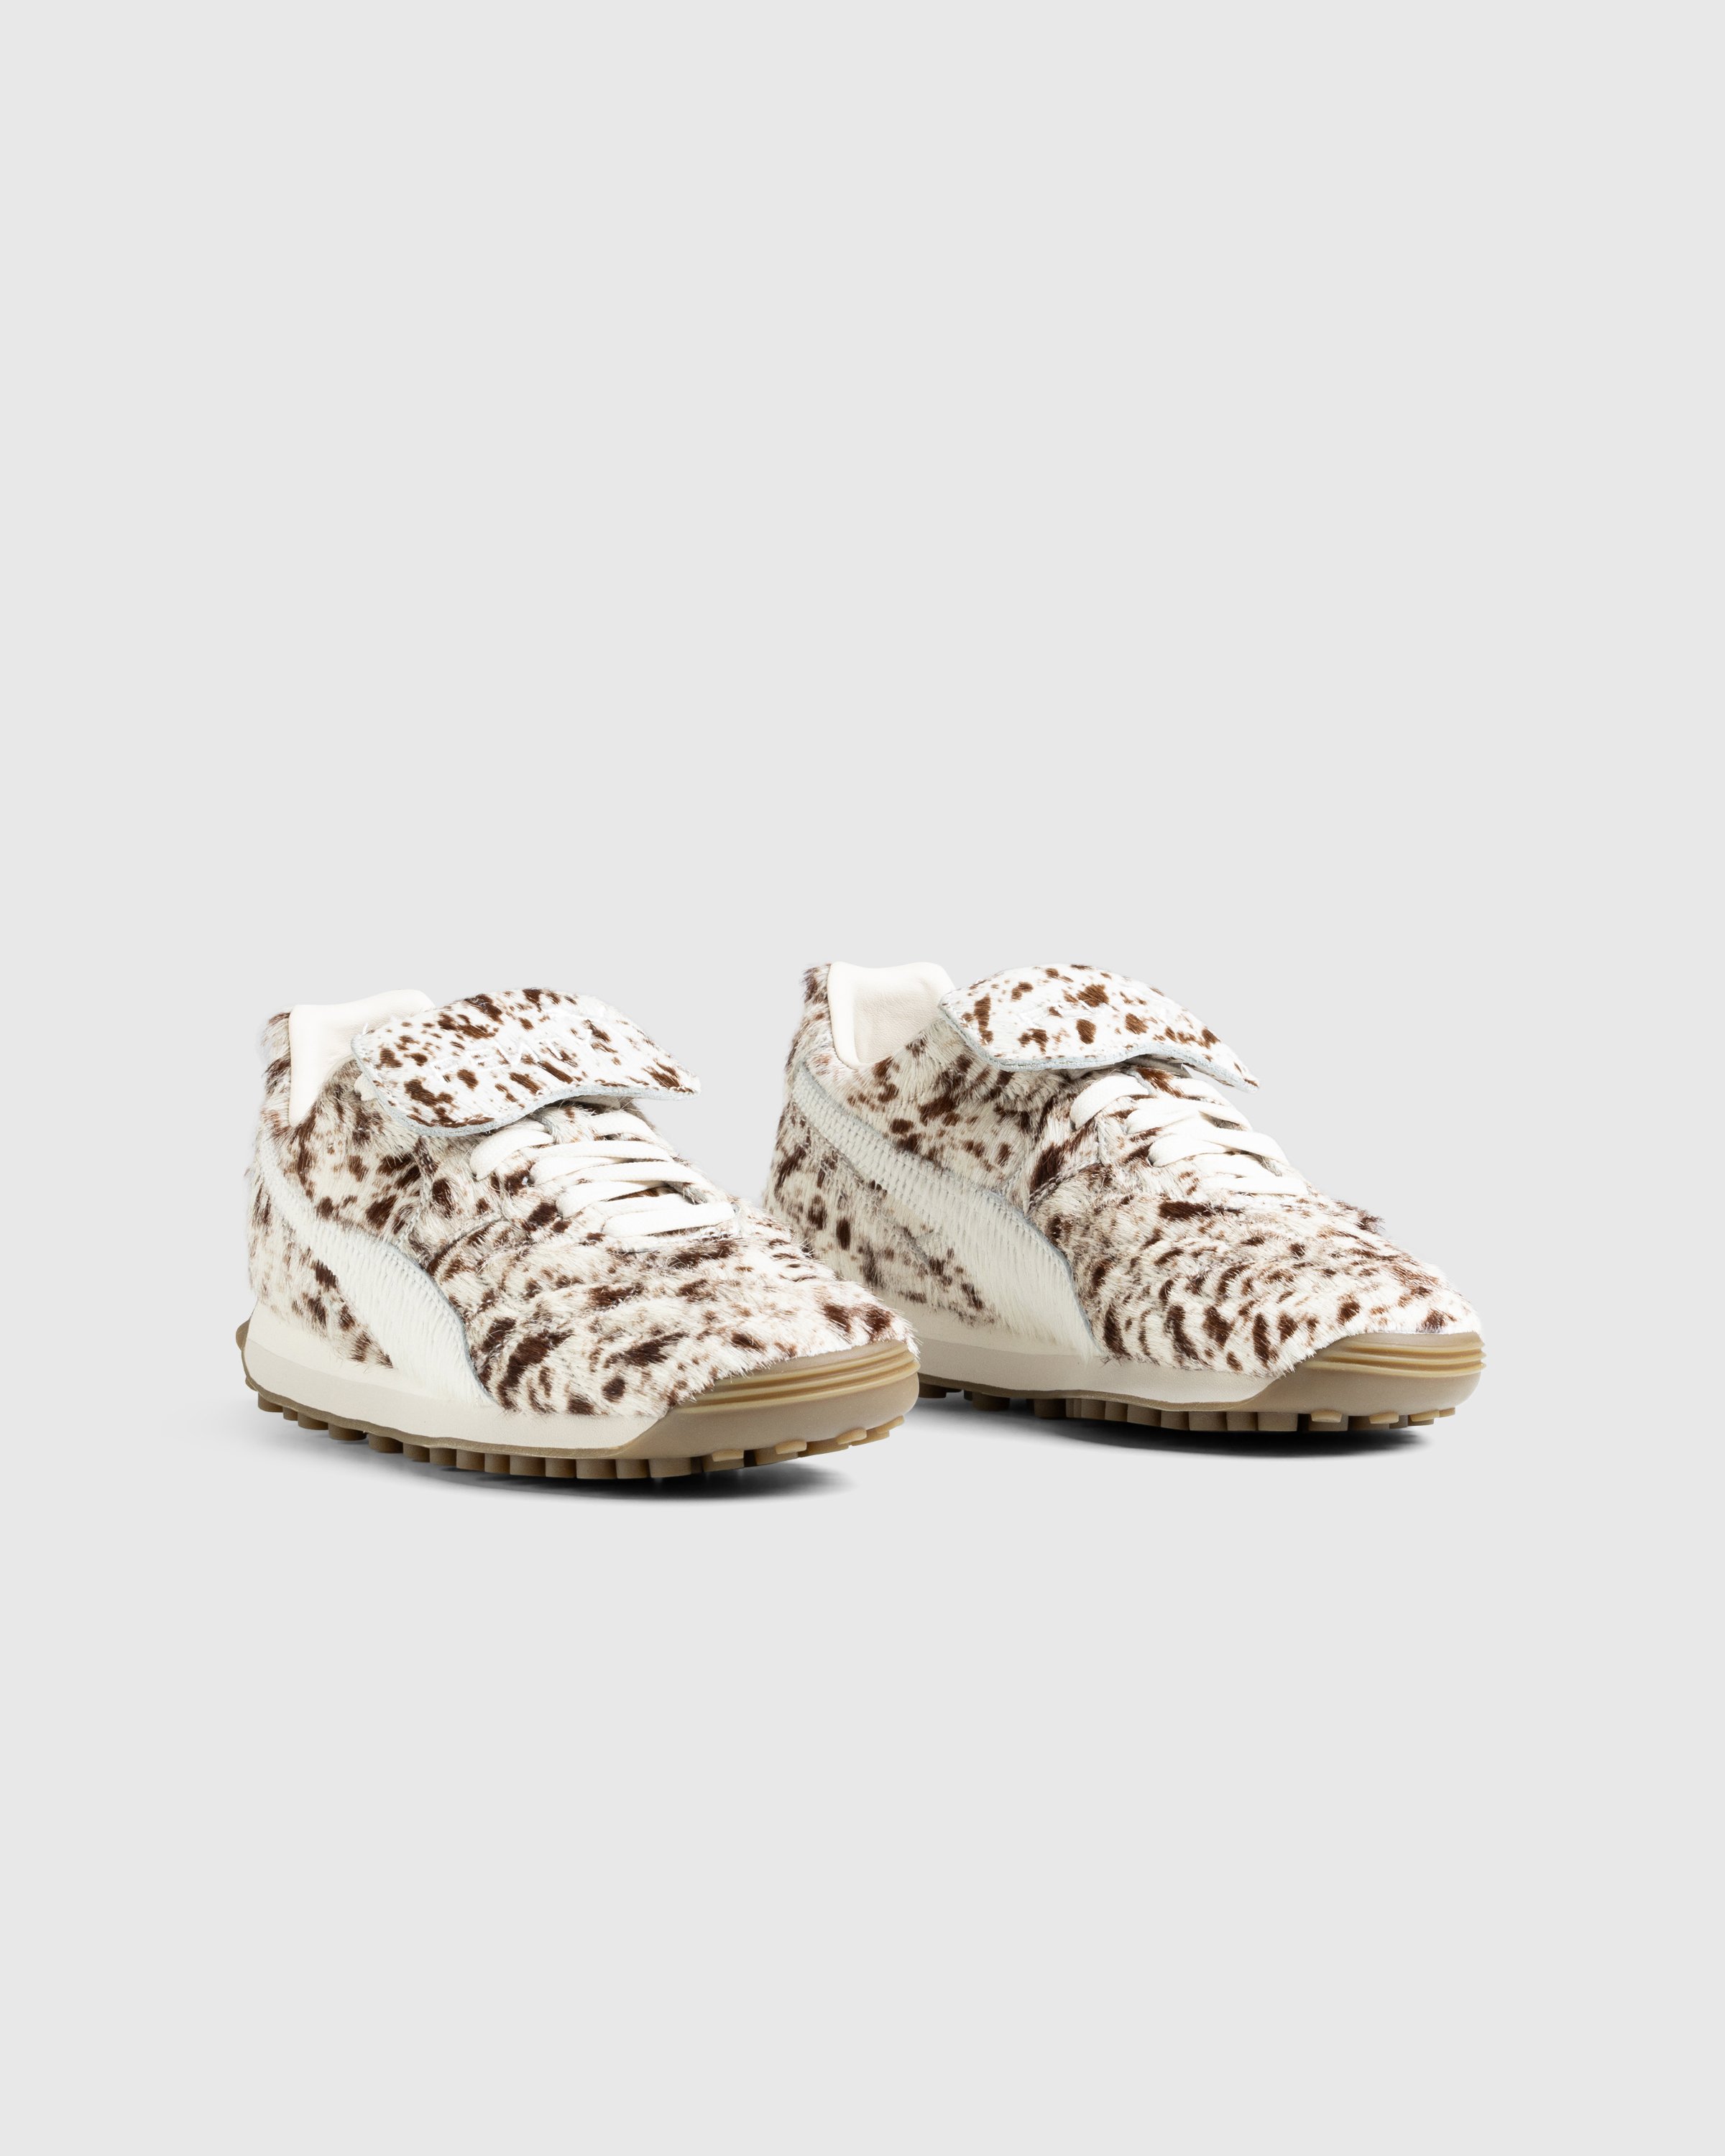 Fenty x Puma - AVANTI PONY HAIR FENTY Alpine Snow - Footwear - White - Image 3